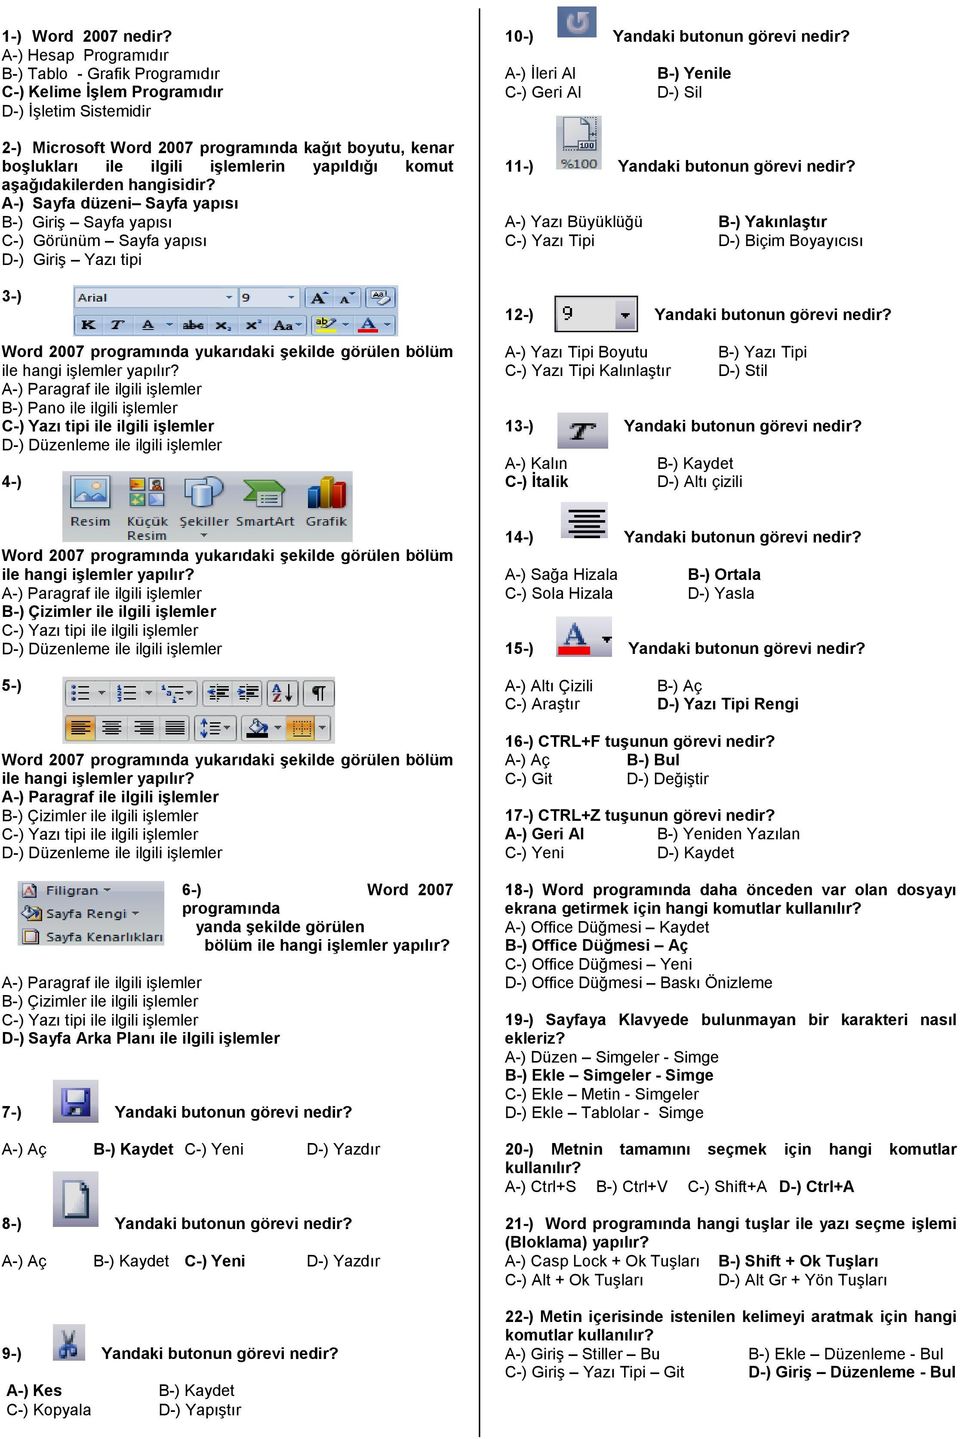 yapıldığı komut aşağıdakilerden A-) Sayfa düzeni Sayfa yapısı B-) Giriş Sayfa yapısı C-) Görünüm Sayfa yapısı D-) Giriş Yazı tipi 3-) Word 2007 programında yukarıdaki şekilde görülen bölüm ile hangi